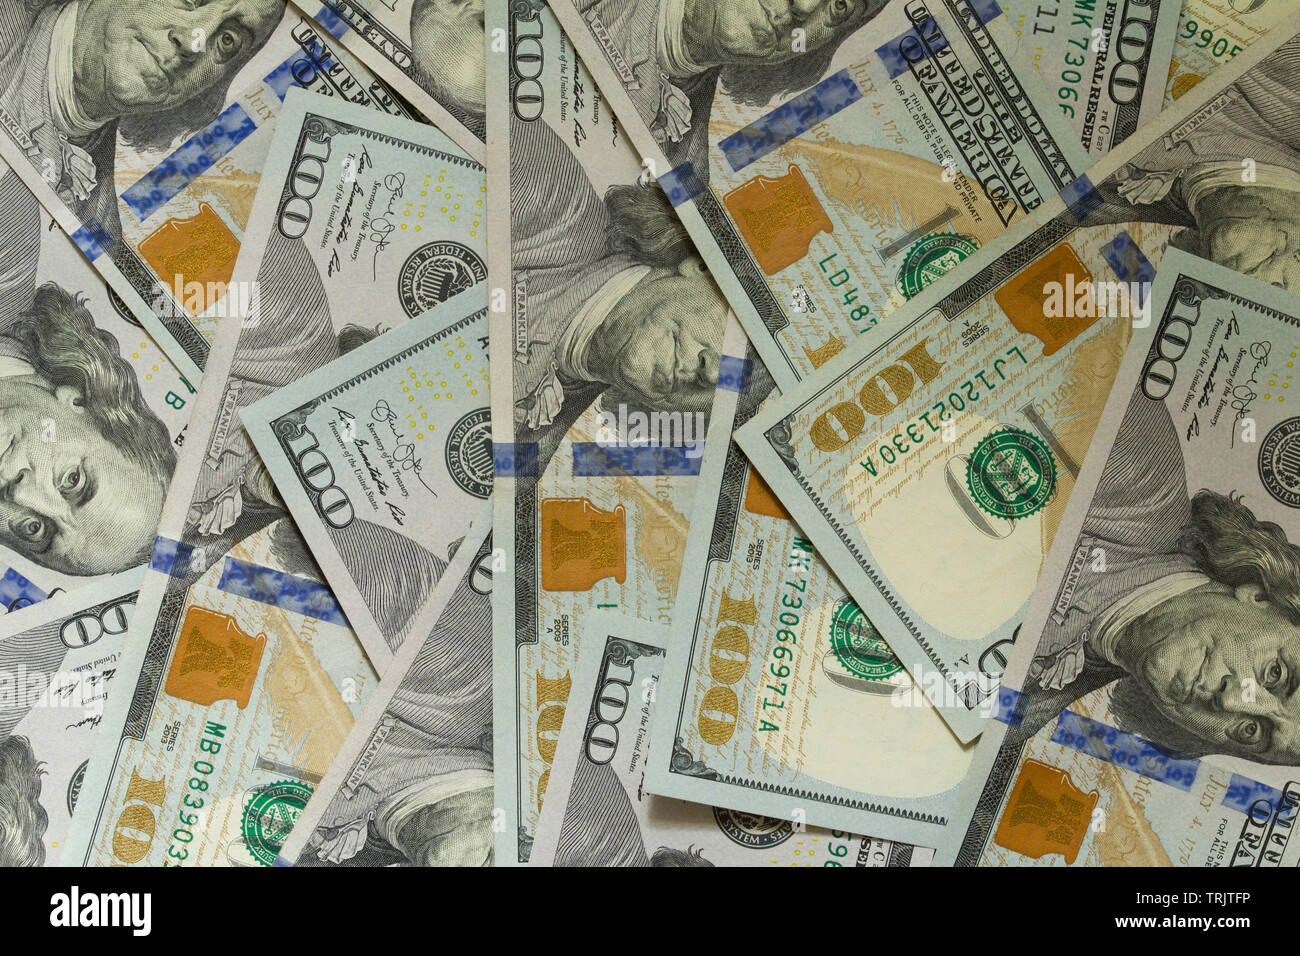 Arrière-plan de 100 dollar bills. Pile de nouveau design US dollar bills comme arrière-plan. Top view point. Banque D'Images